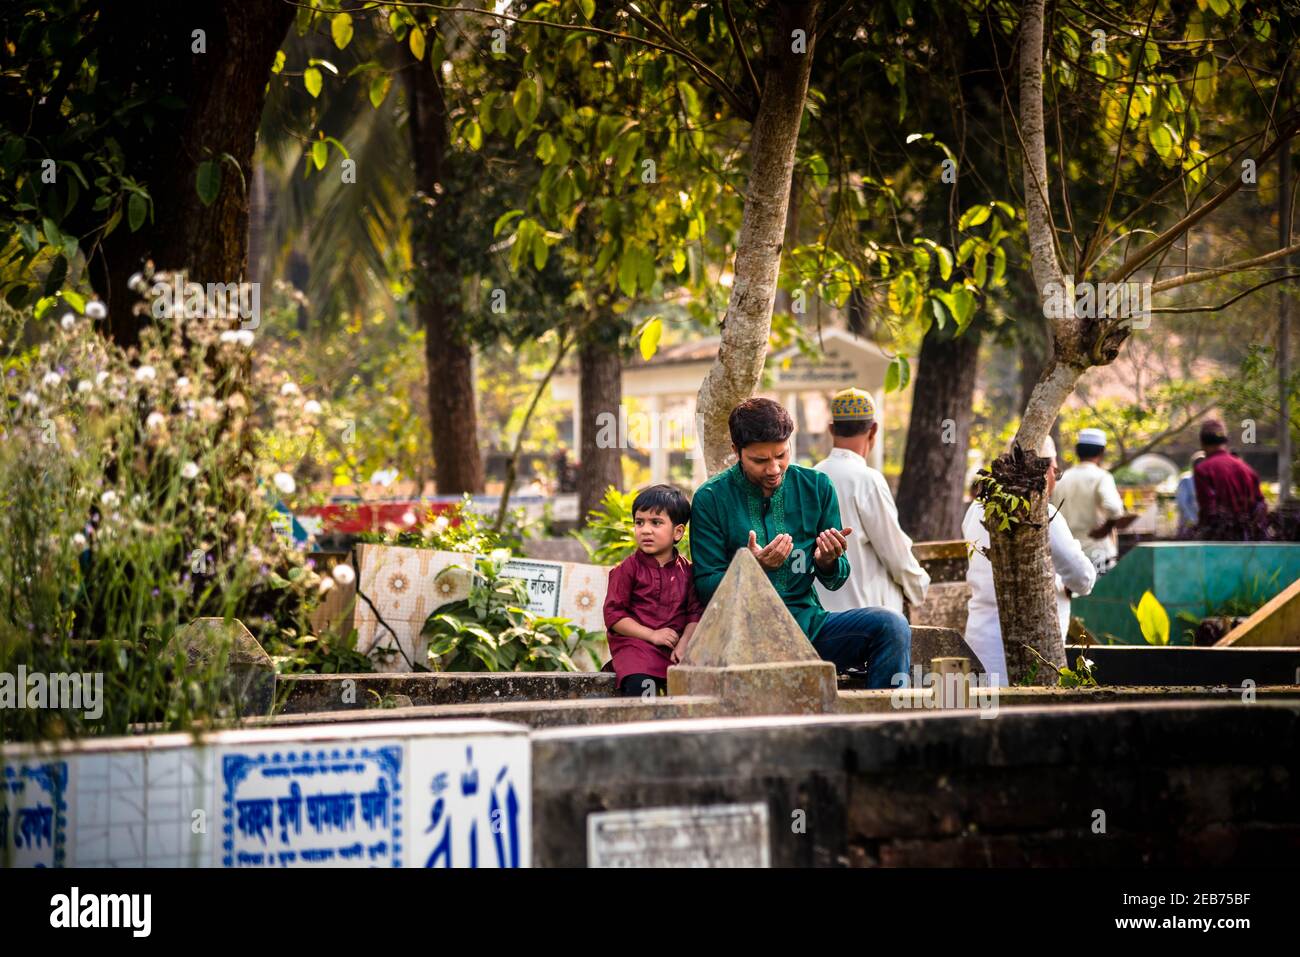 Barishal, Barishal, Bangladesh. 12 février 2021. Les gens se rassemblent au cimetière musulman après le Jummah pour dire la prière à leurs proches à Barishal au Bangladesh. Crédit: Mustasinur Rahman Alvi/ZUMA Wire/Alamy Live News Banque D'Images